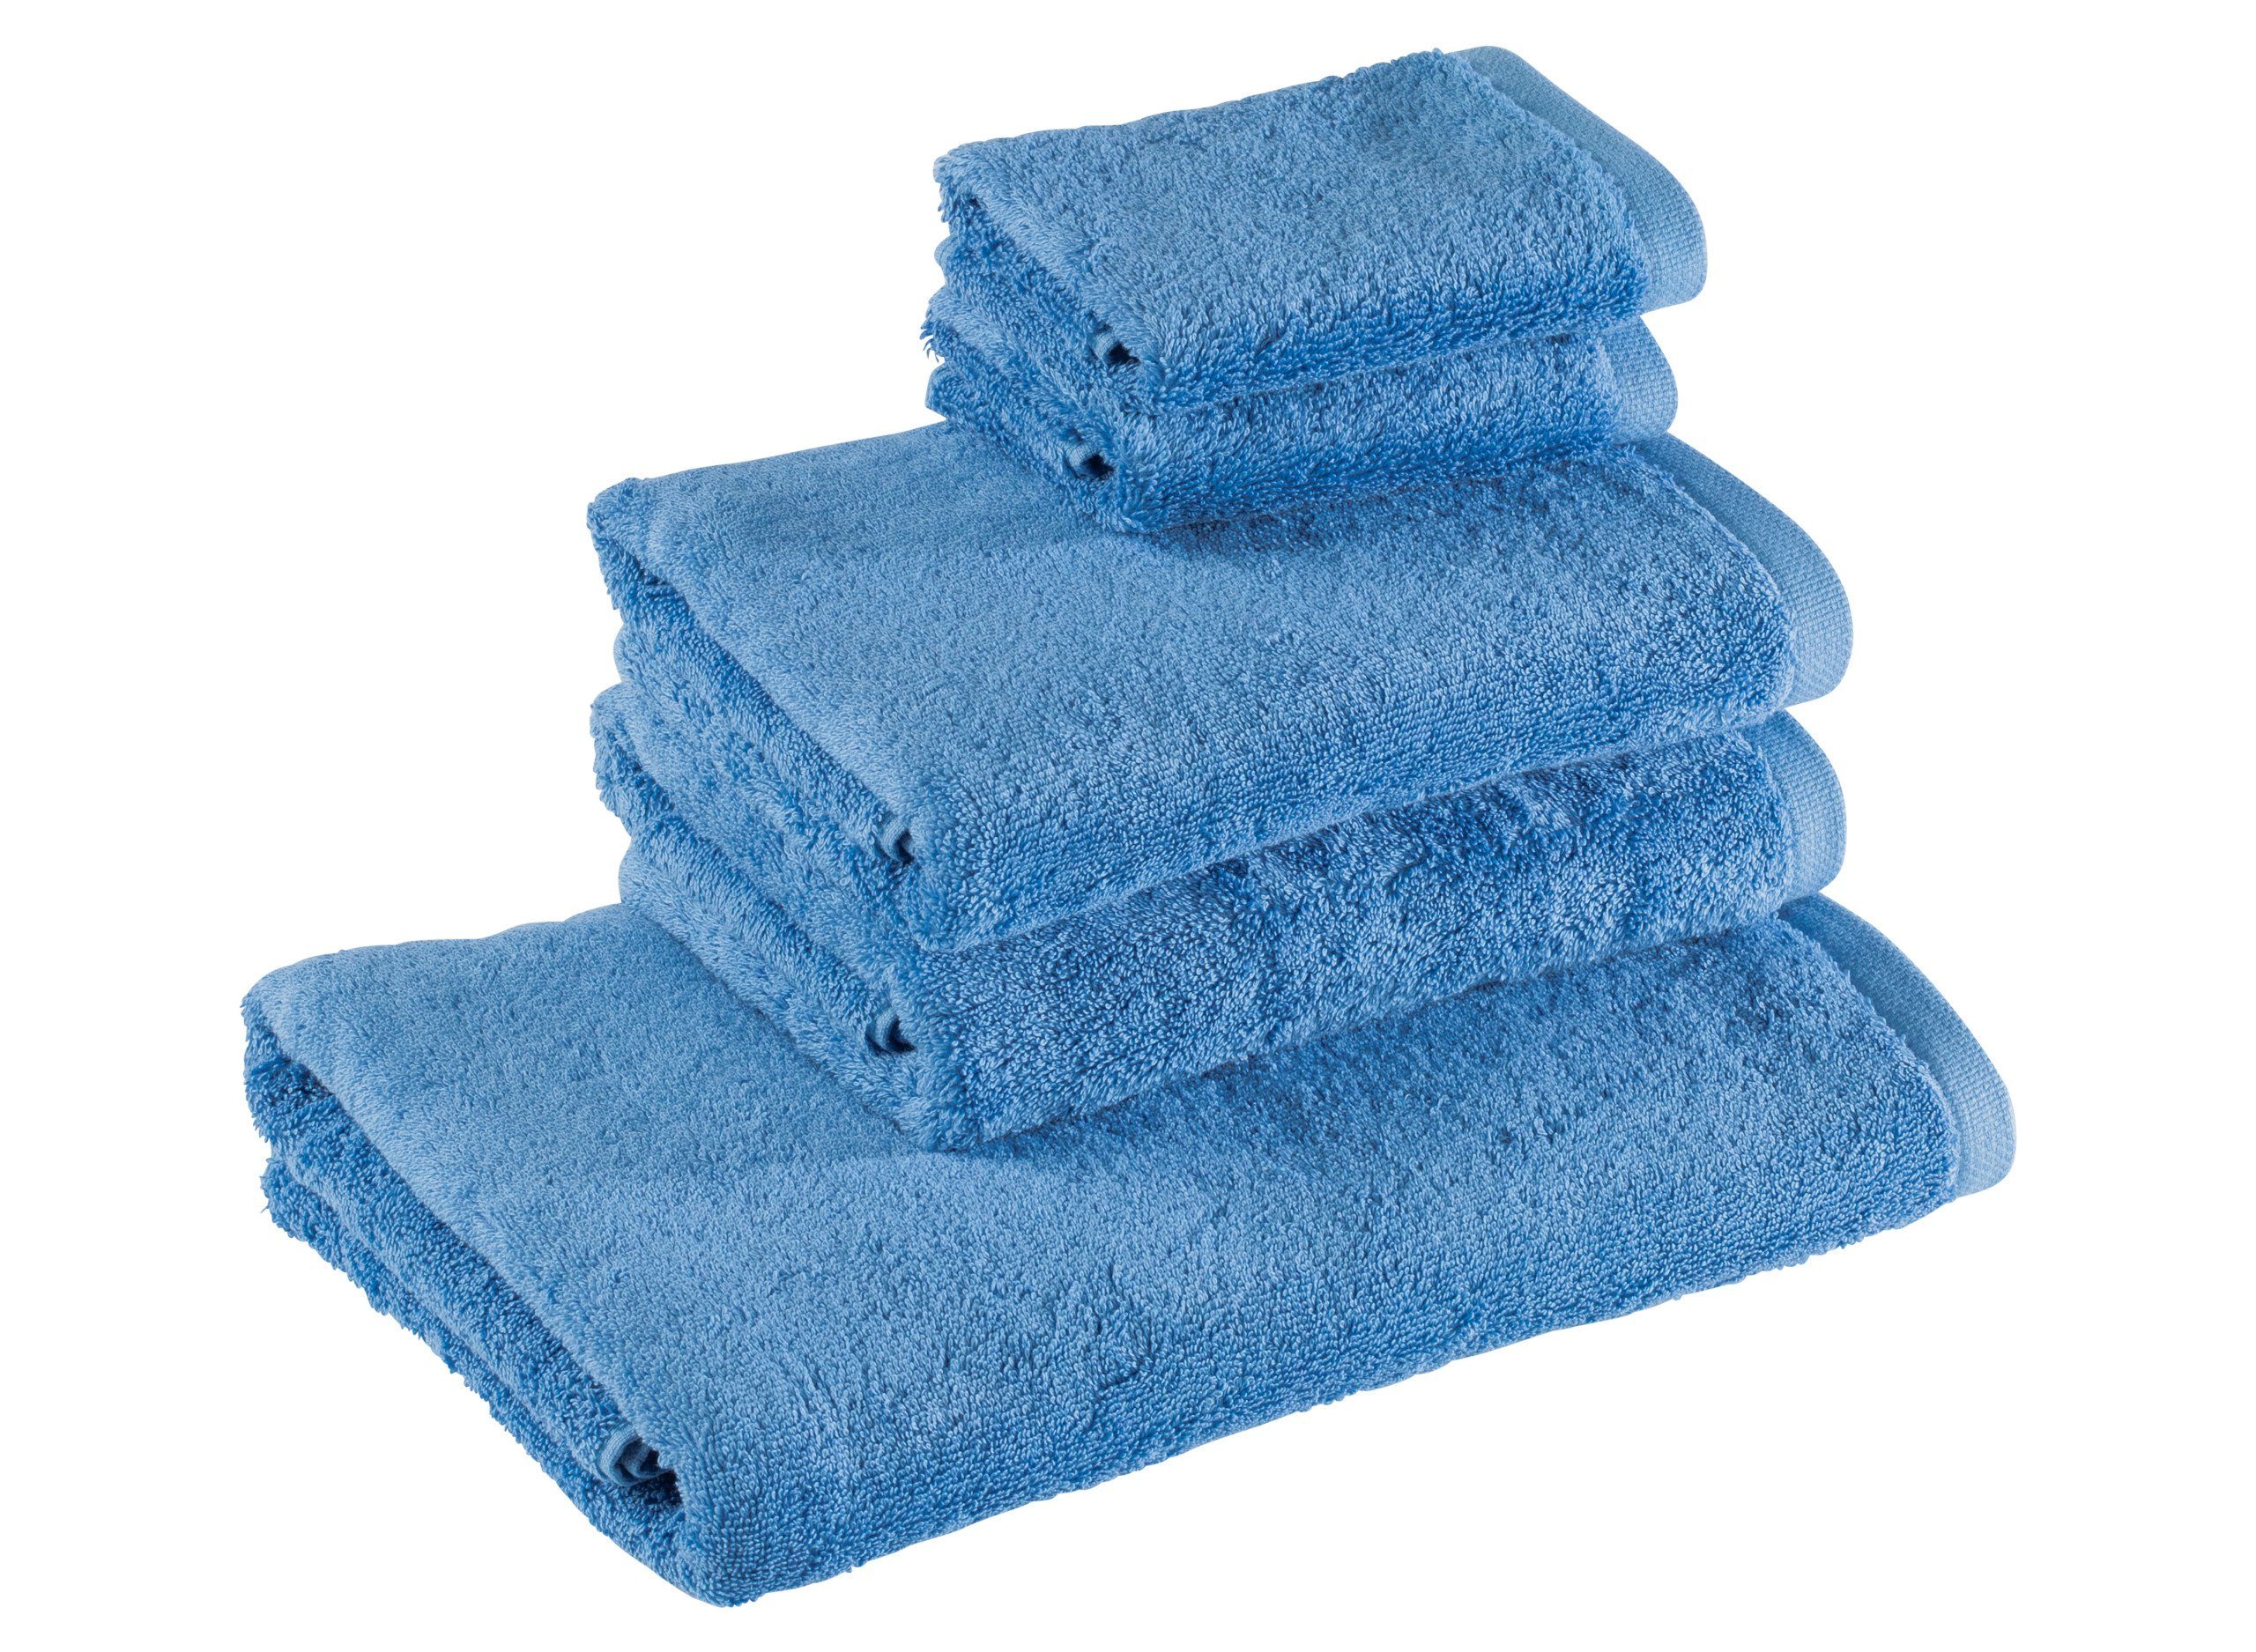 Bomlins Handtuch Set Handtücher aus 100% original ägyptische GIZA Baumwolle 650 g/m², (Royal Set, 5-tlg), Kleines deutsches Familienunternehmen -> Spüren Sie die Qualität. Hellblau | Handtuch-Sets